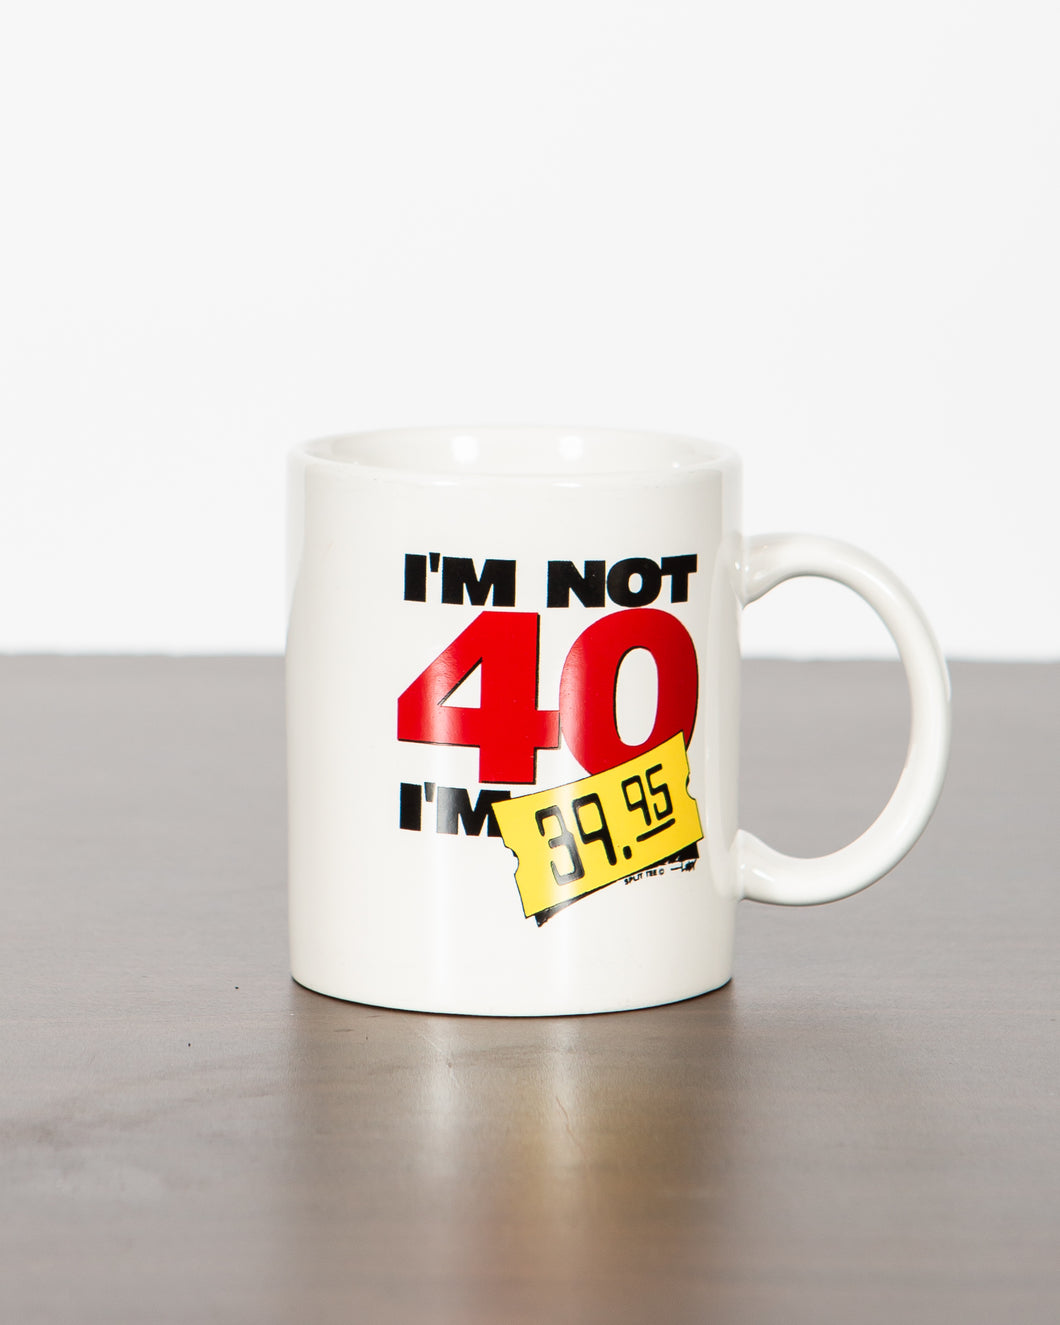 I'm Not 40, I'm 39.95 Mug